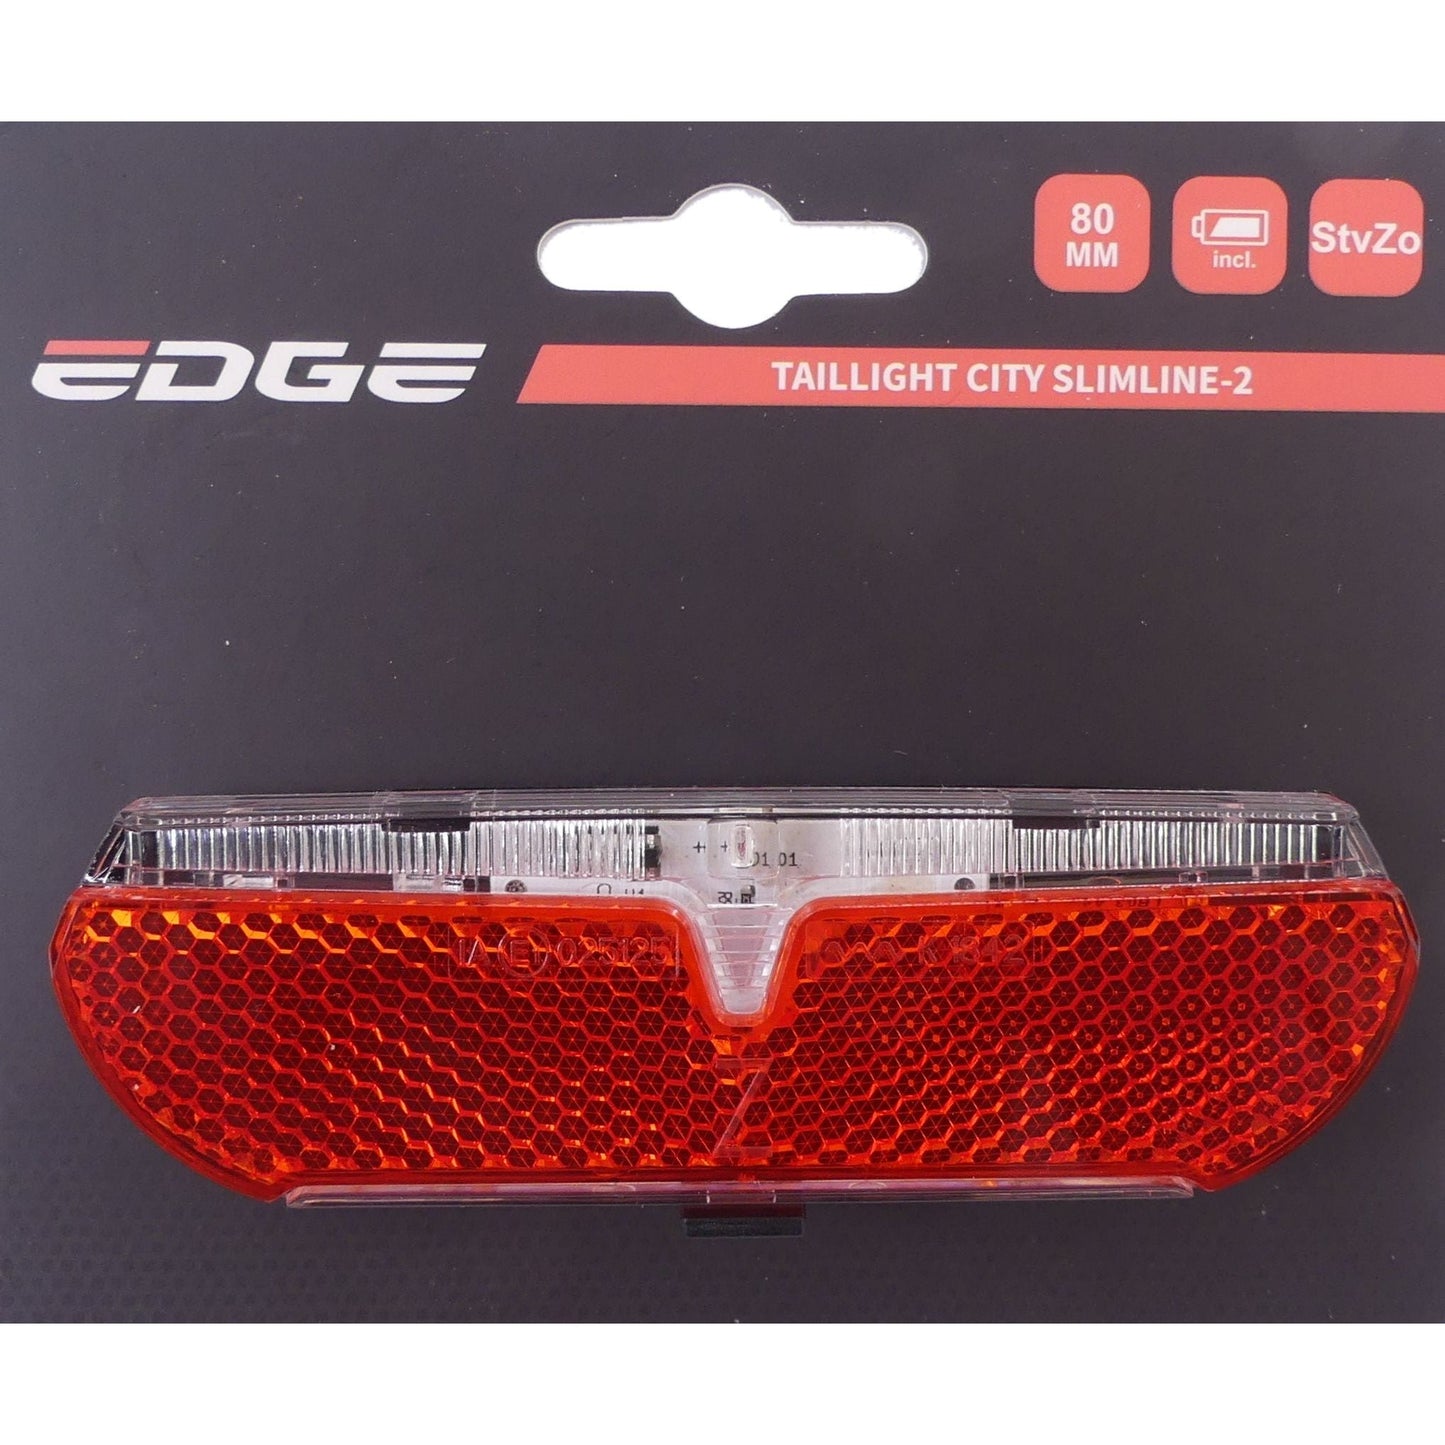 Edge Dragerachterlicht City Slimline-2 80mm StVZO keurmerk incl. batterijen